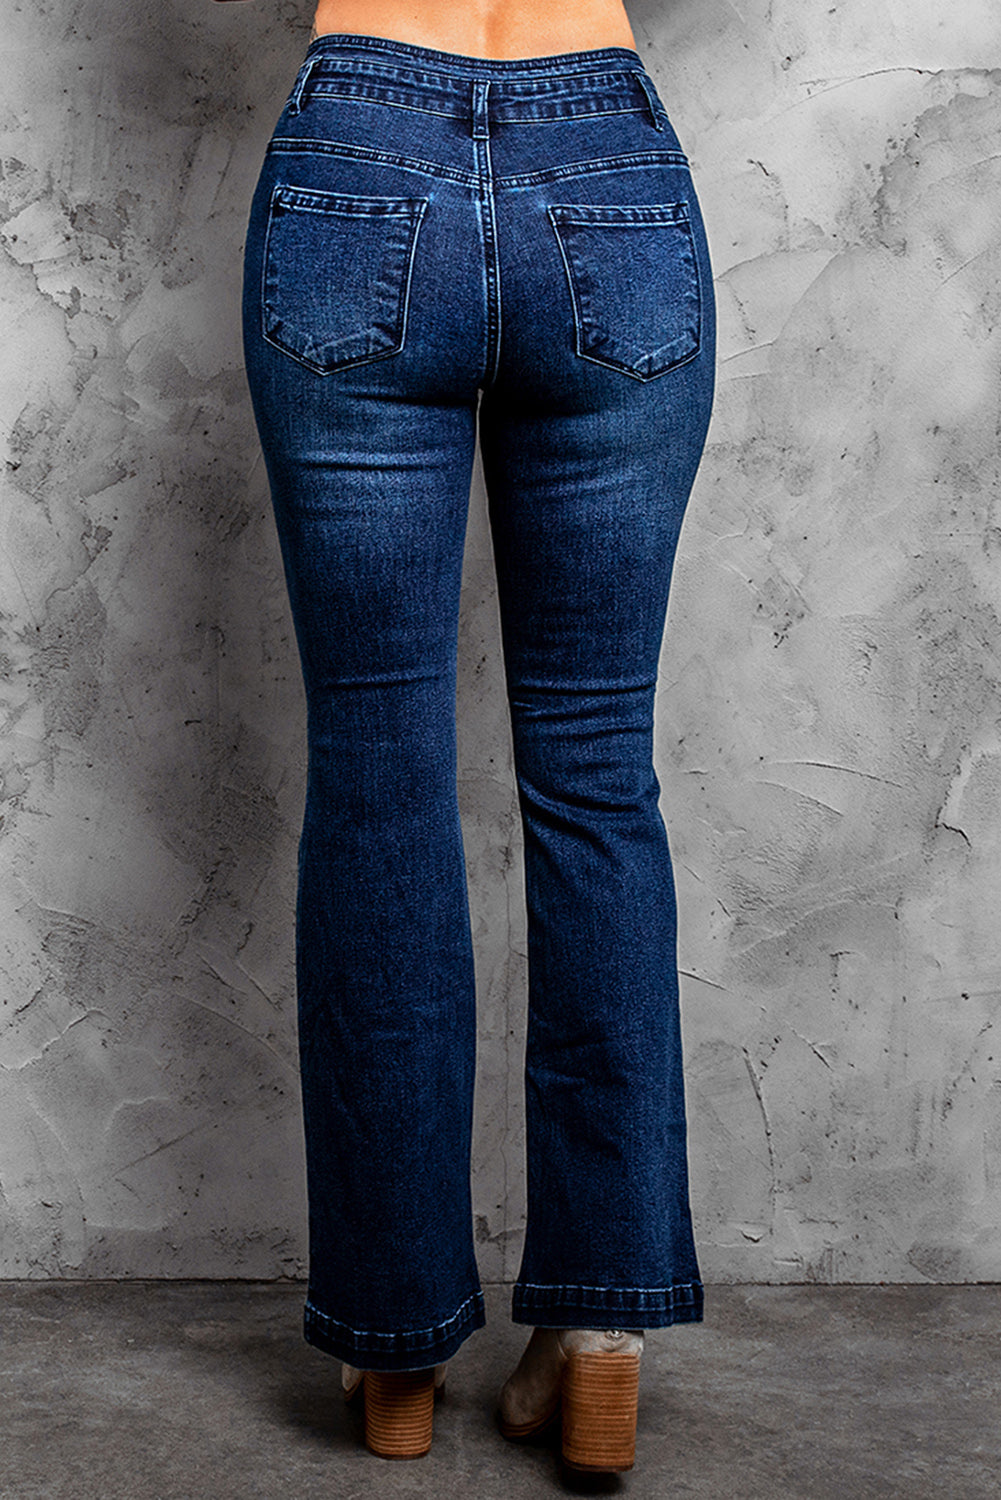 High Rise Flared Jeans High Rise Flared Jeans - M&R CORNERJeans Trendsi